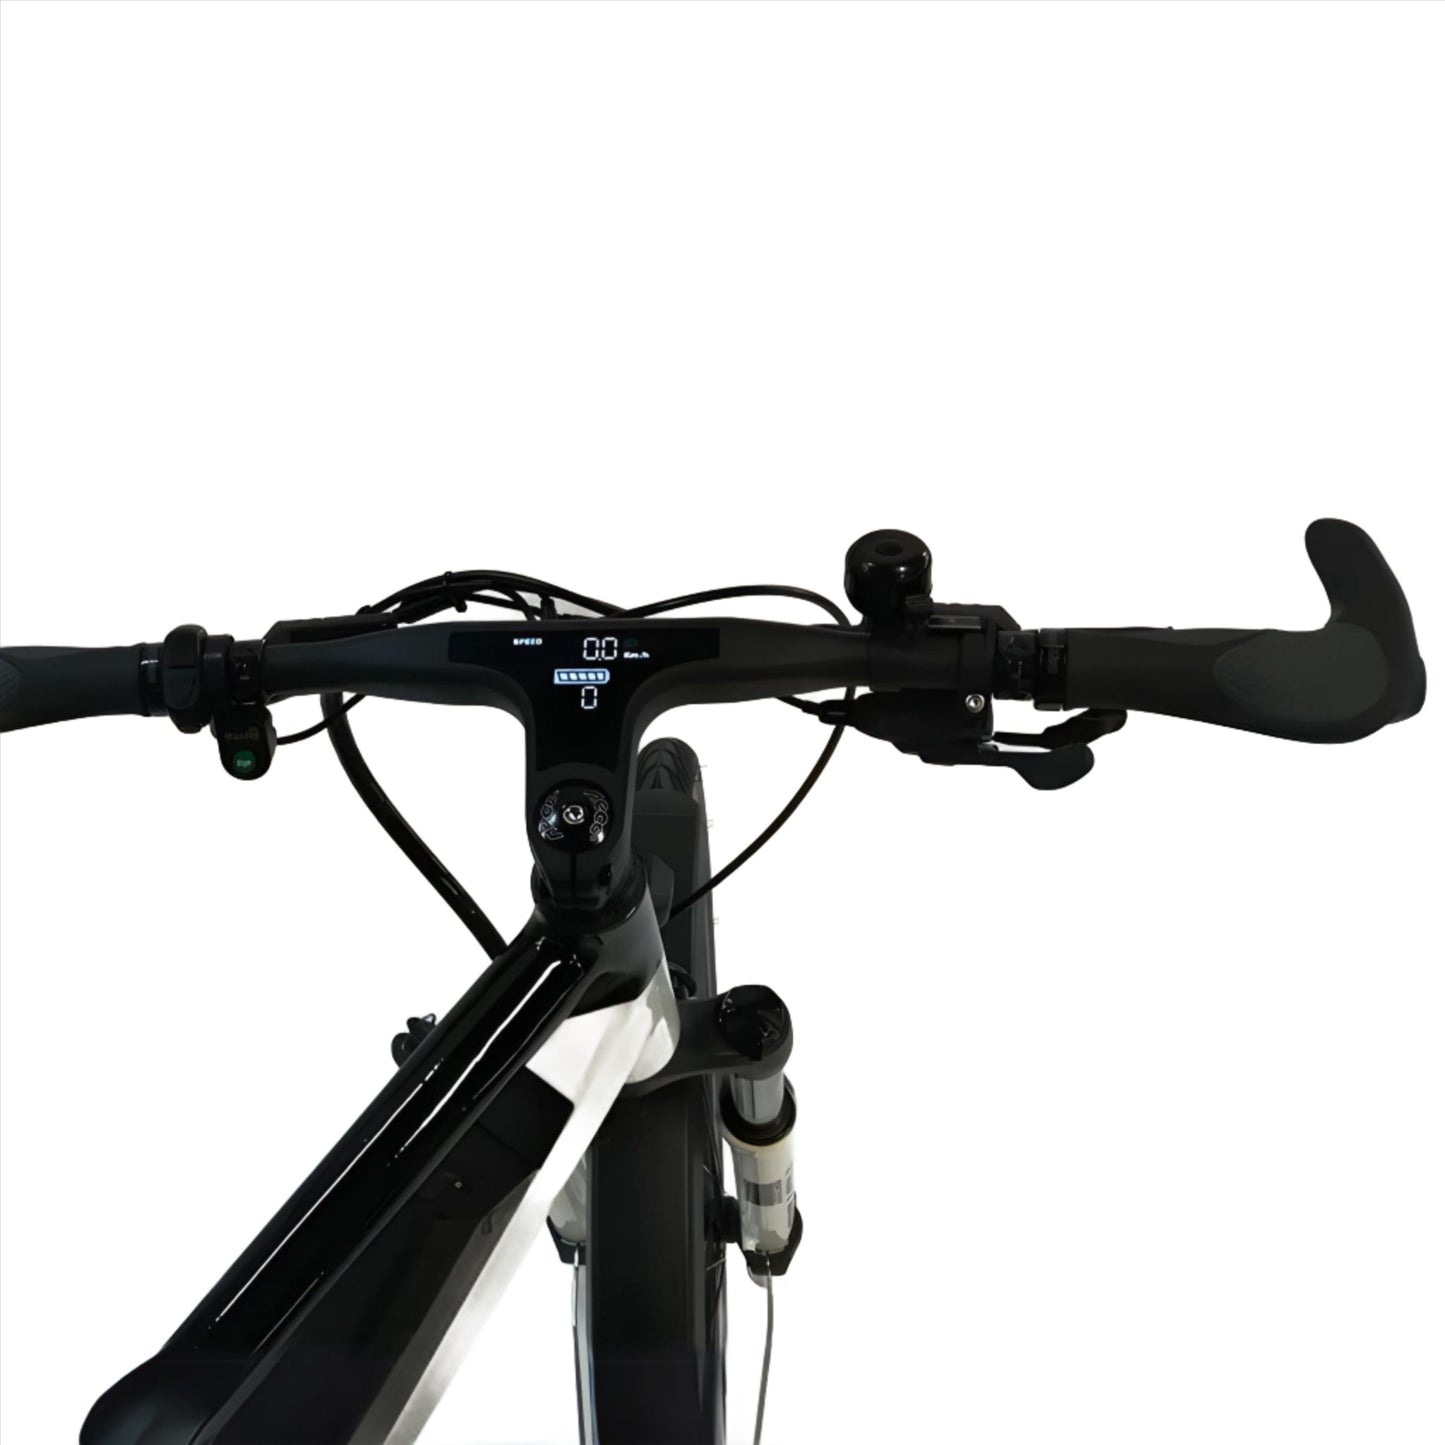 Close-up of Geobike S-Road E-Bike handlebars